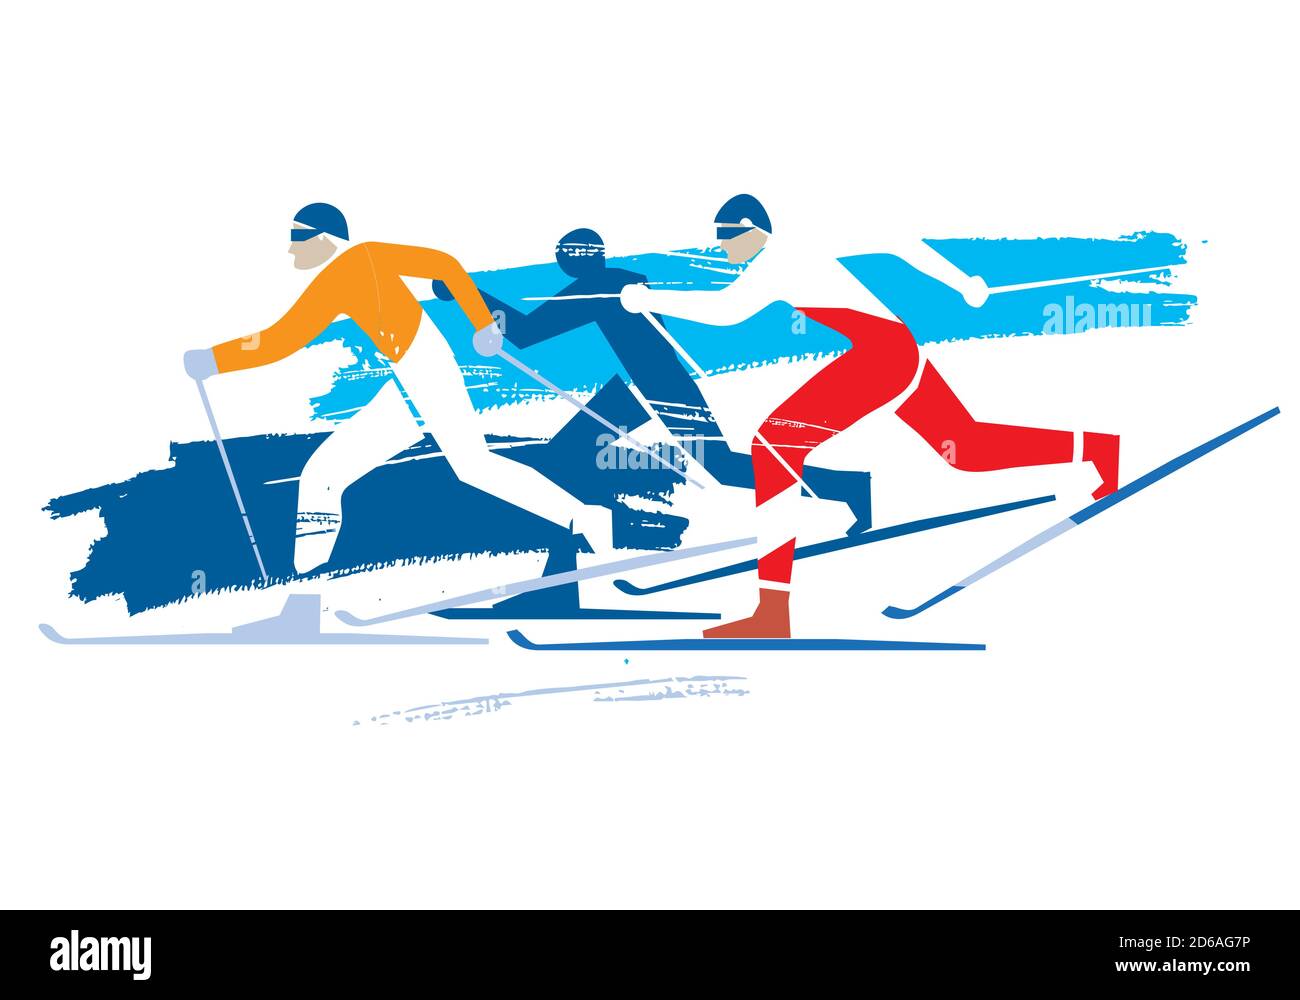 Skieurs de fond. Dessin stylisé expressif de trois concurrents de ski de fond. Vecteur disponible. Illustration de Vecteur